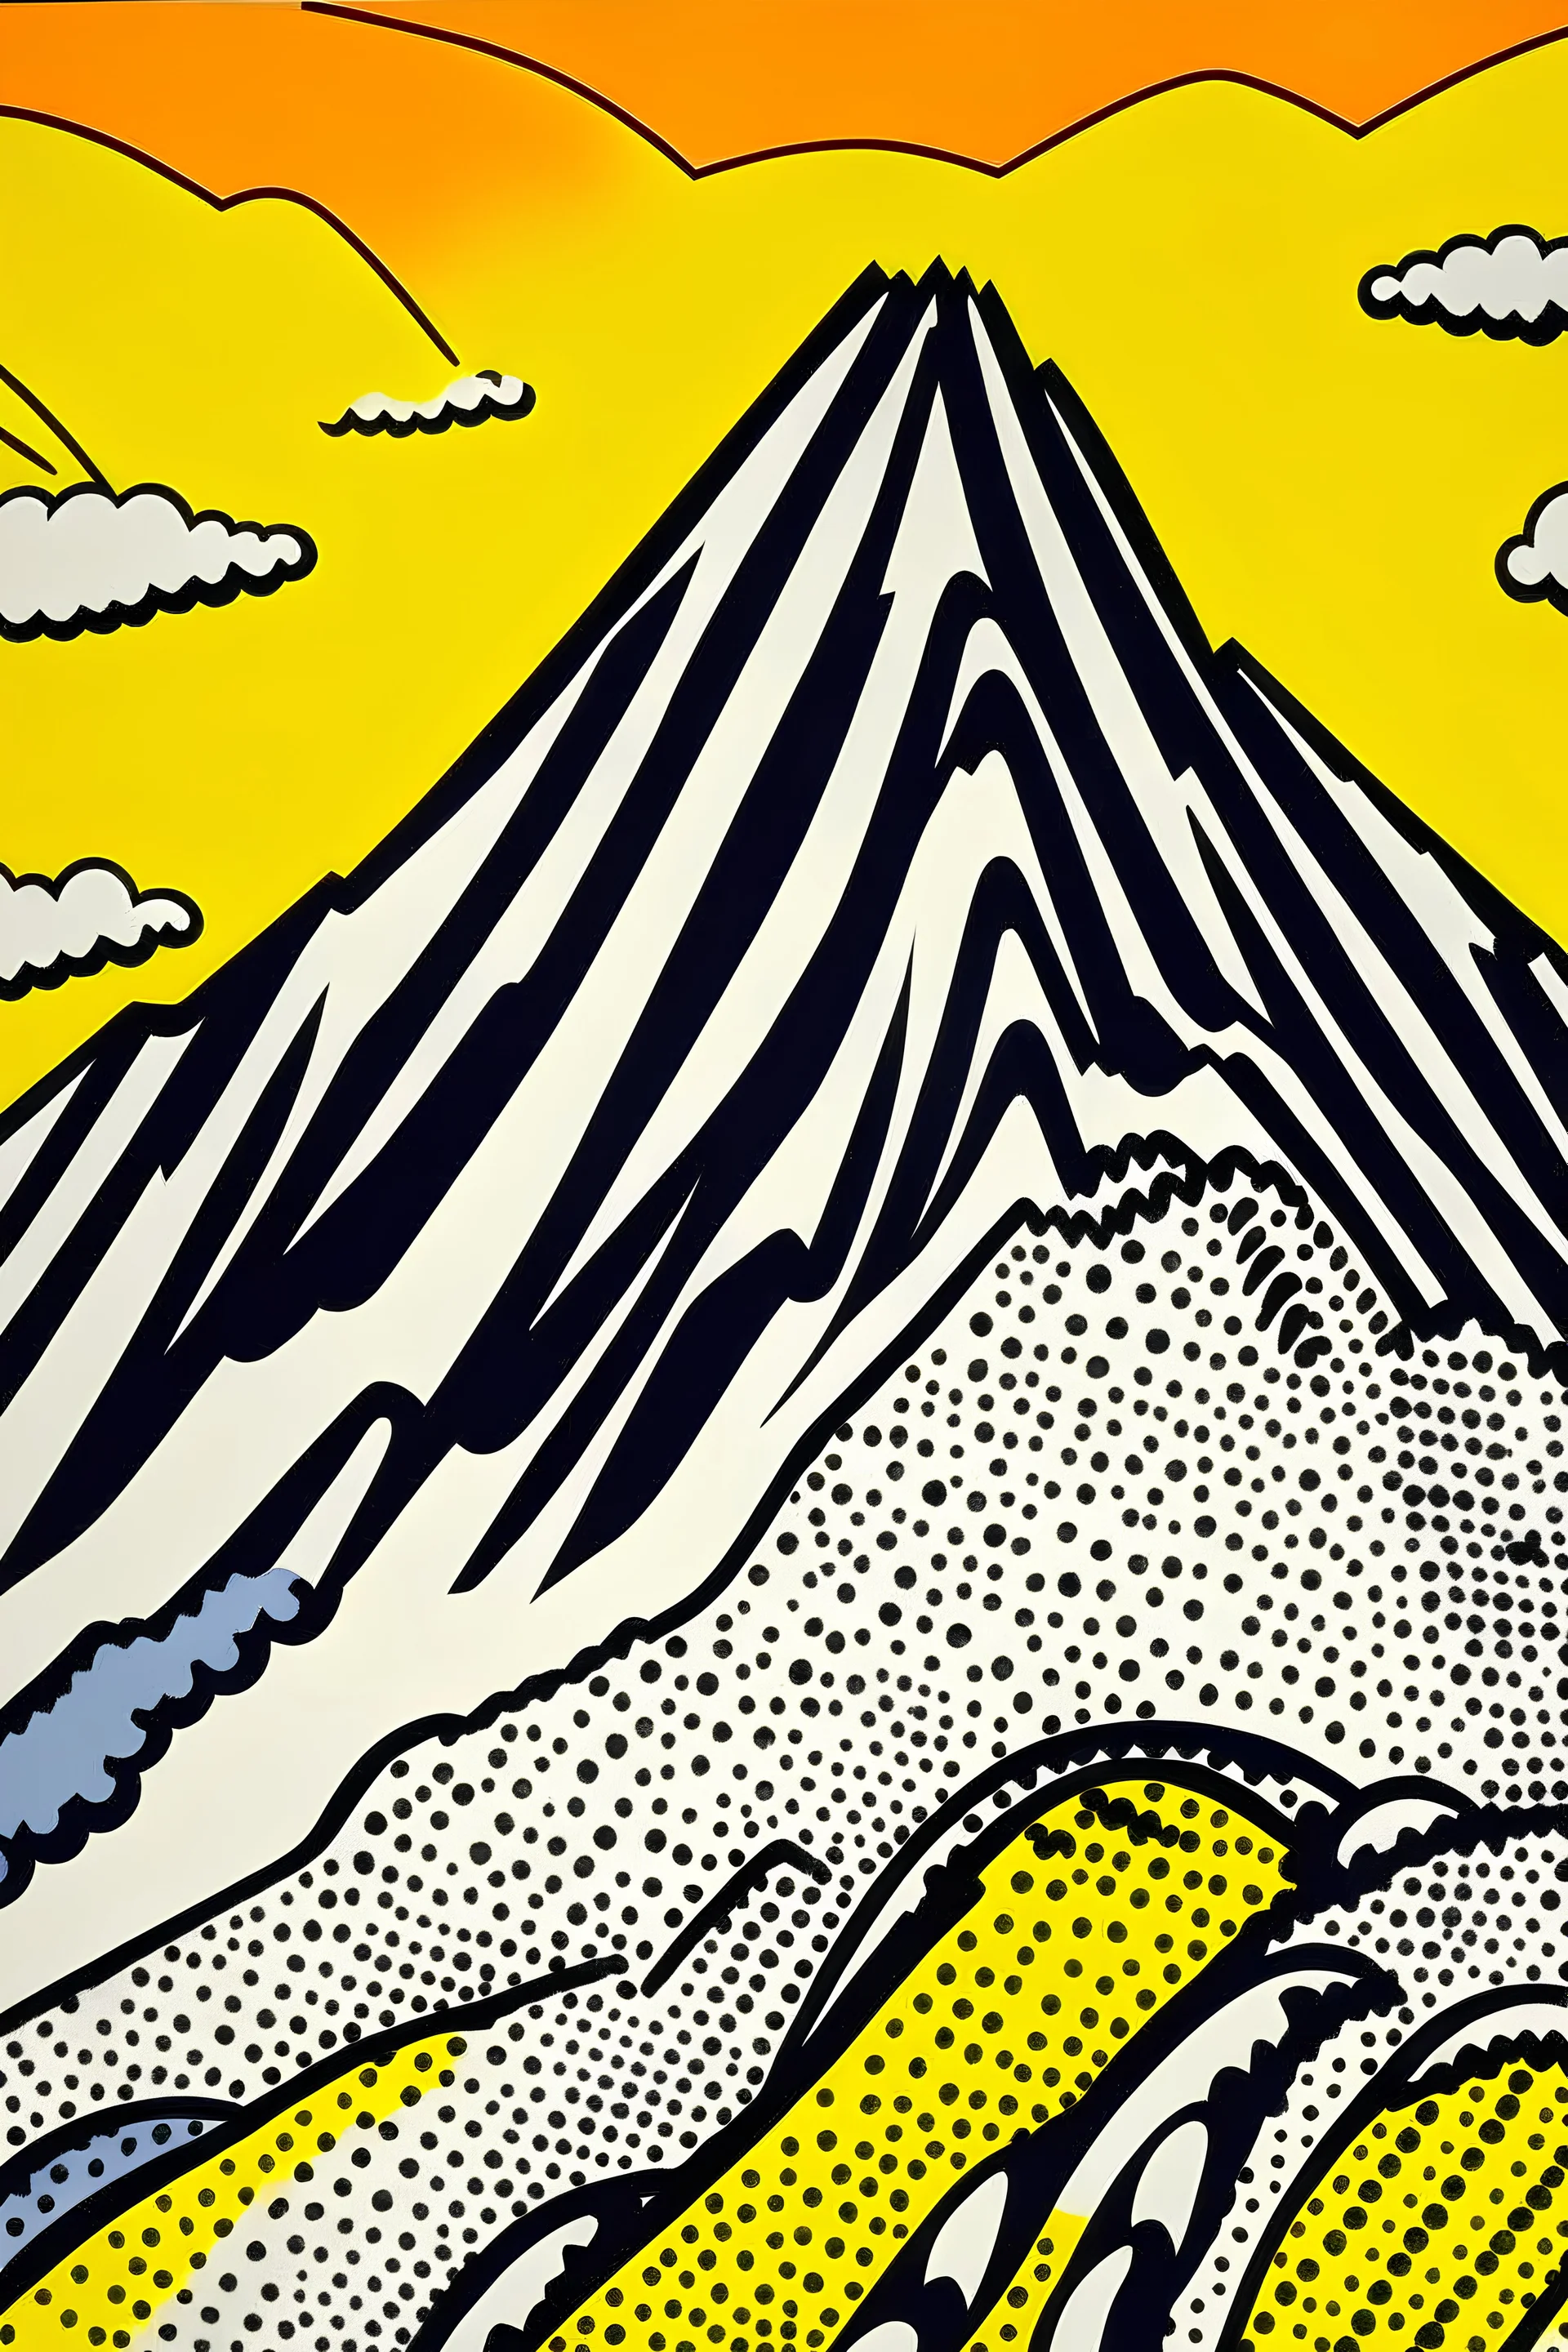 An orange rocky mountain painted by Roy Lichtenstein